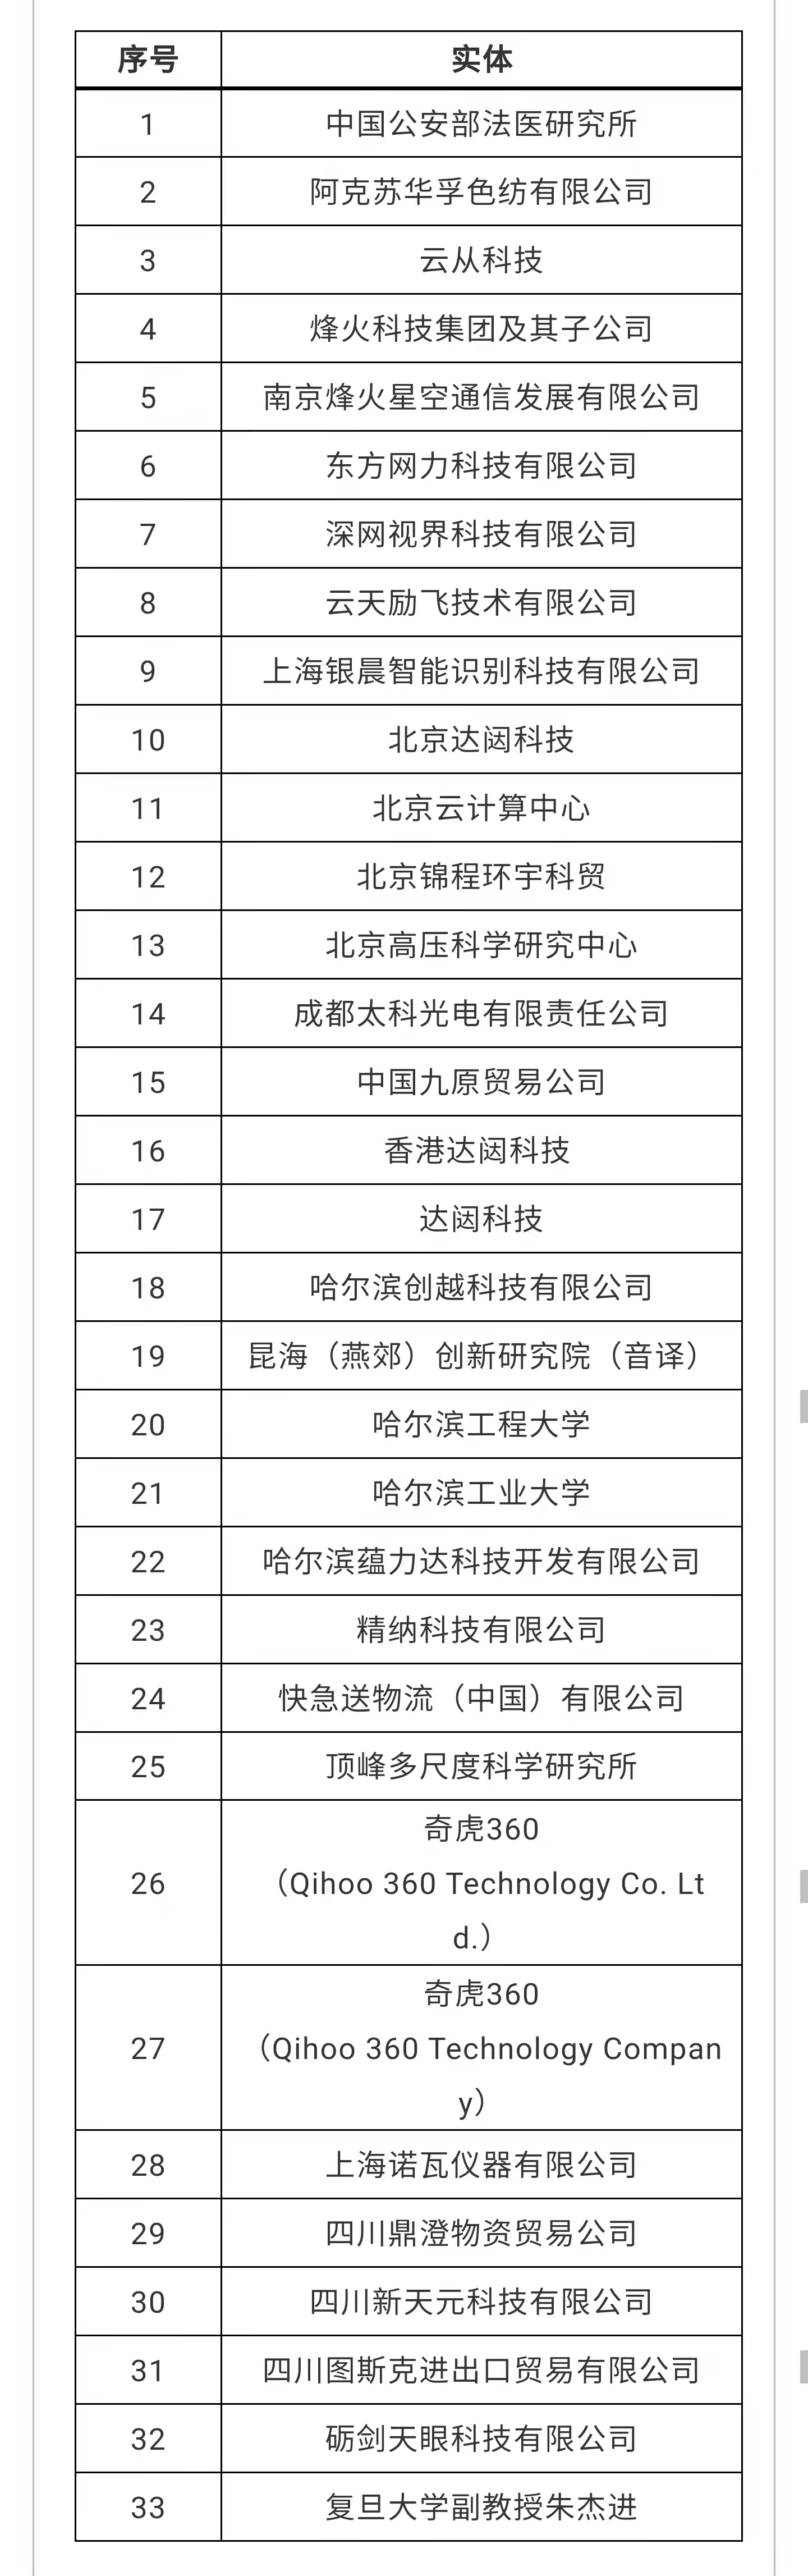 美商务部将33家中国实体纳入所谓“未经核实名单”｜附2018年至今美国实体清单中国企业名单